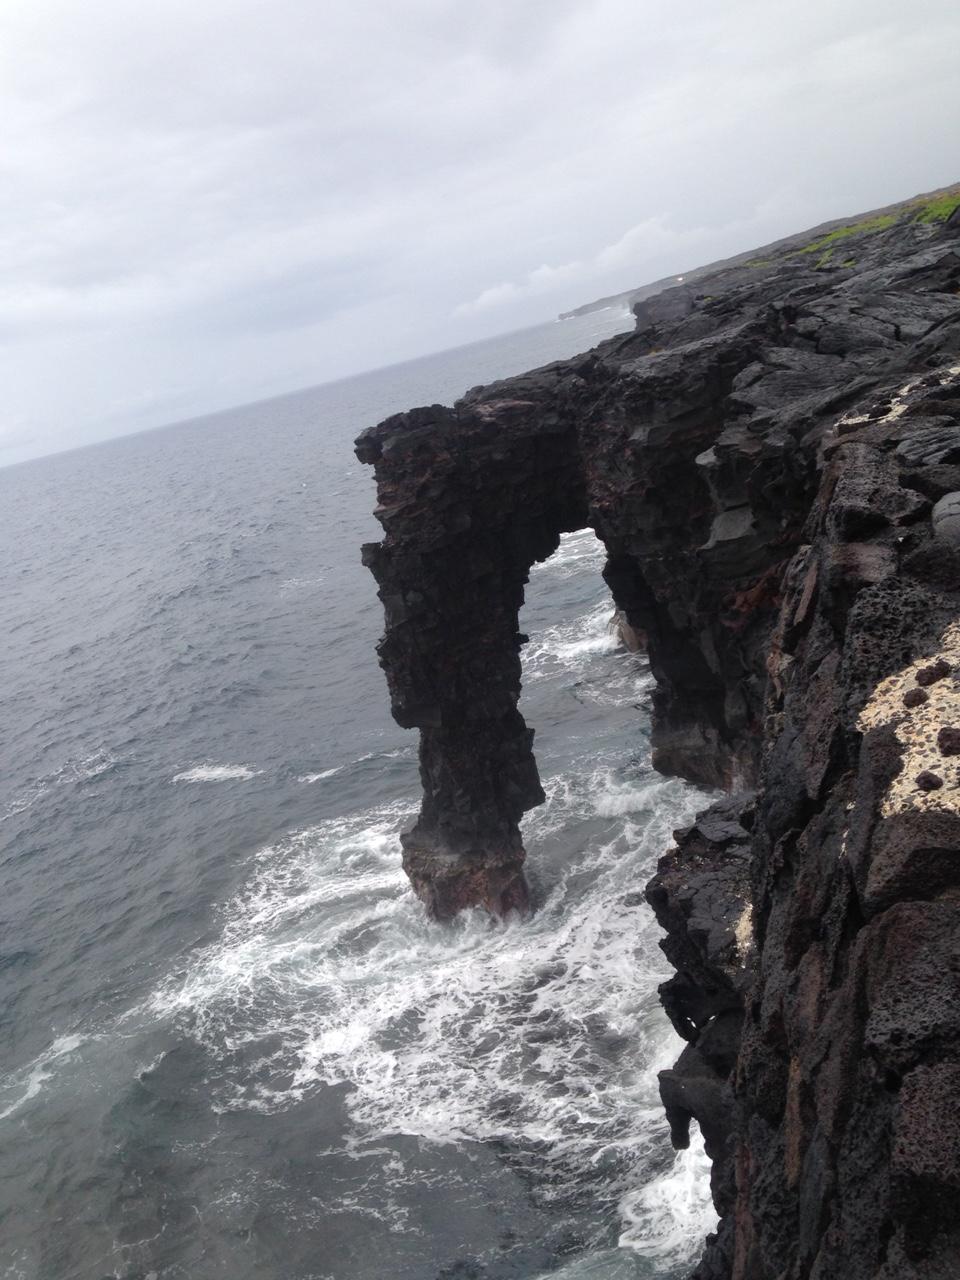 ハワイ火山国立公園 ハワイ島のおすすめ観光地 名所 現地を知り尽くしたガイドによる口コミ情報 トラベルコ